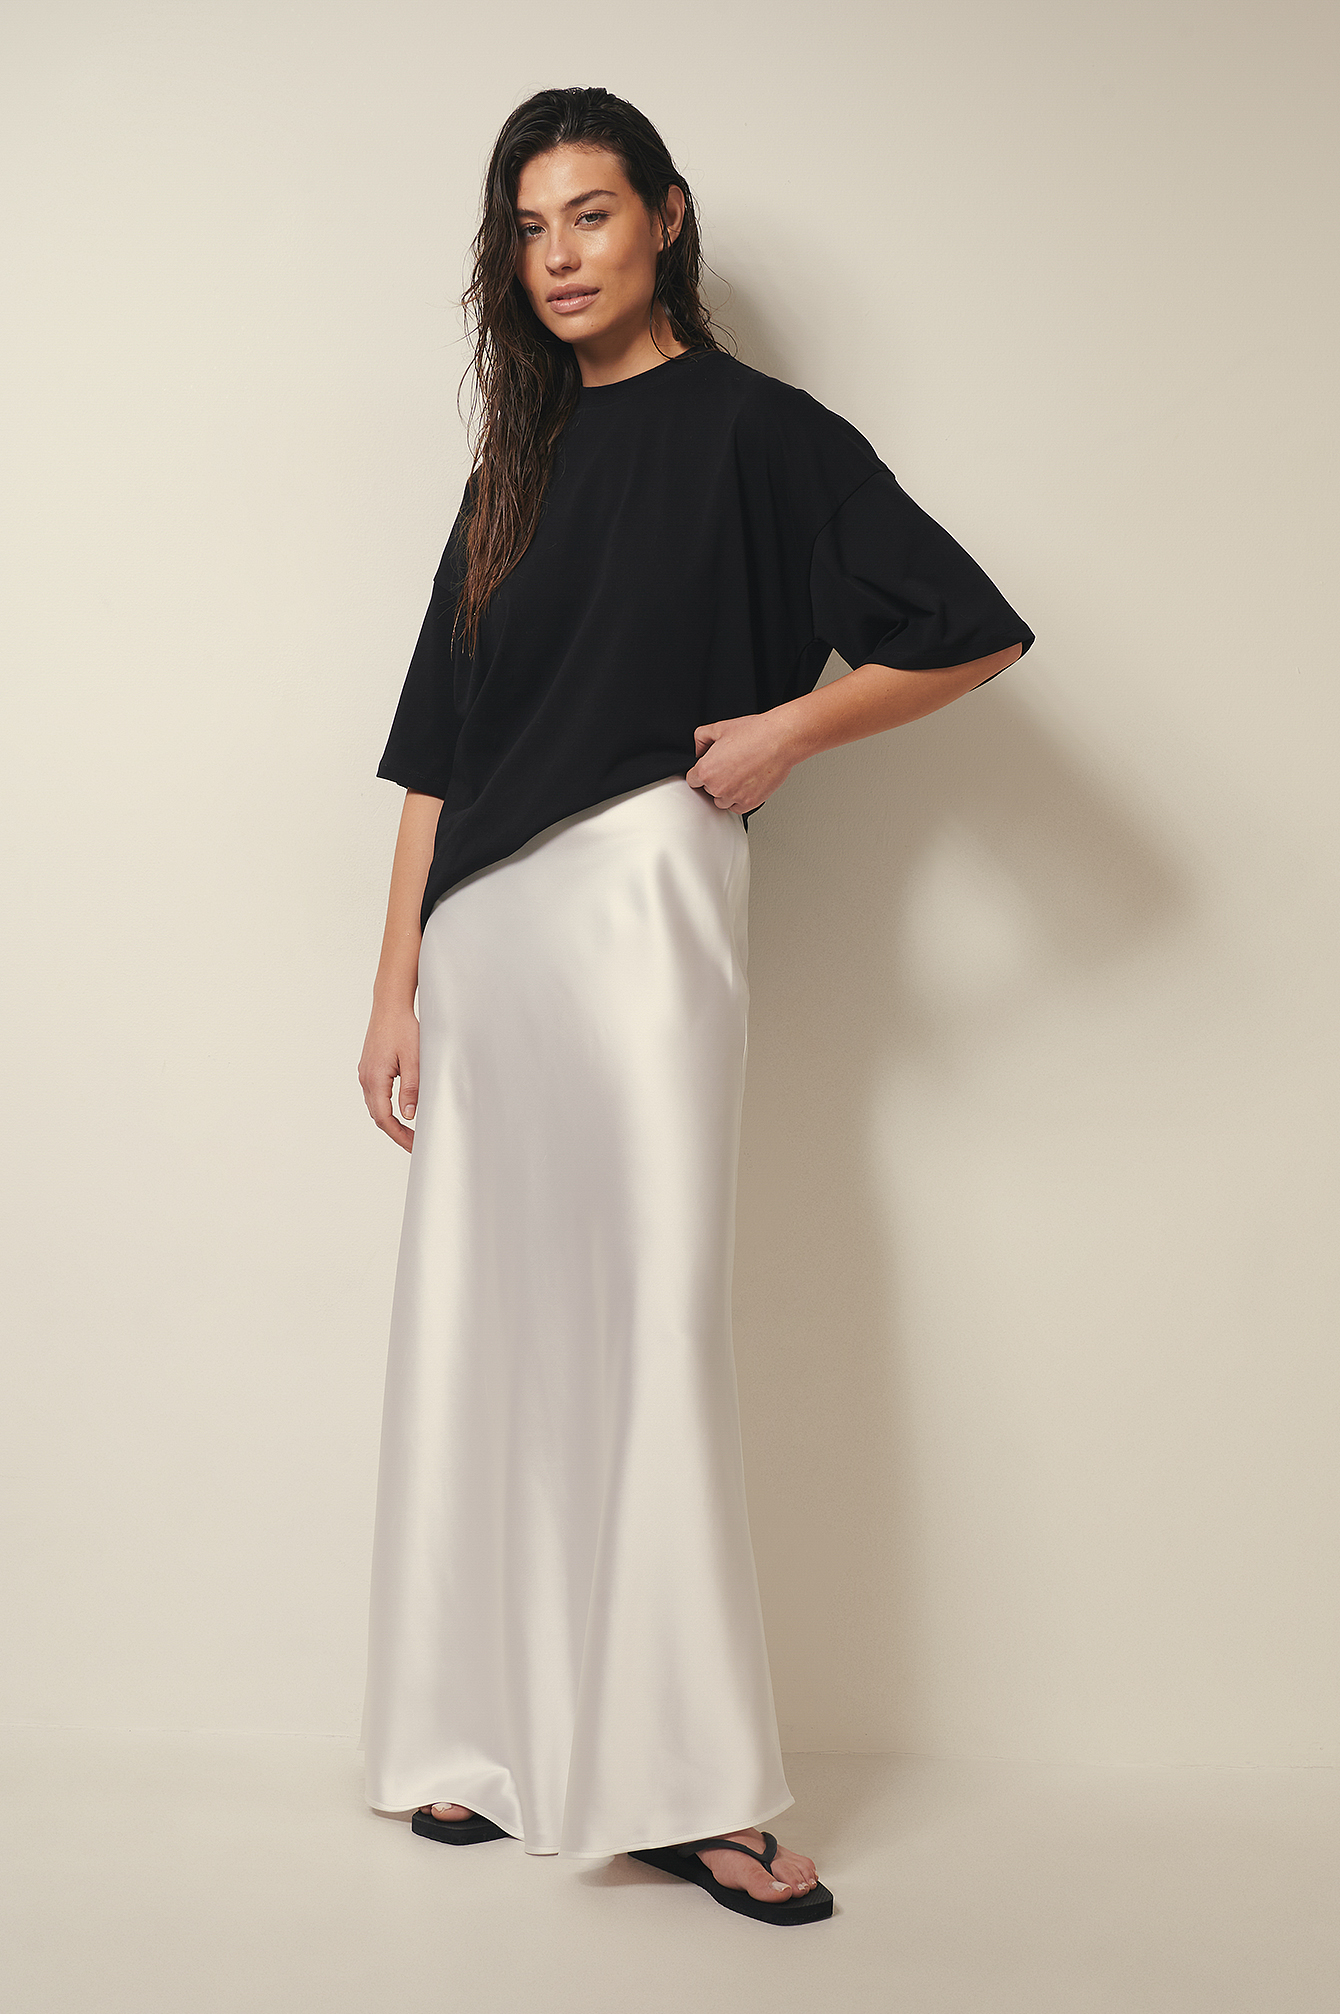 Optic White Flowy Long Satin Skirt